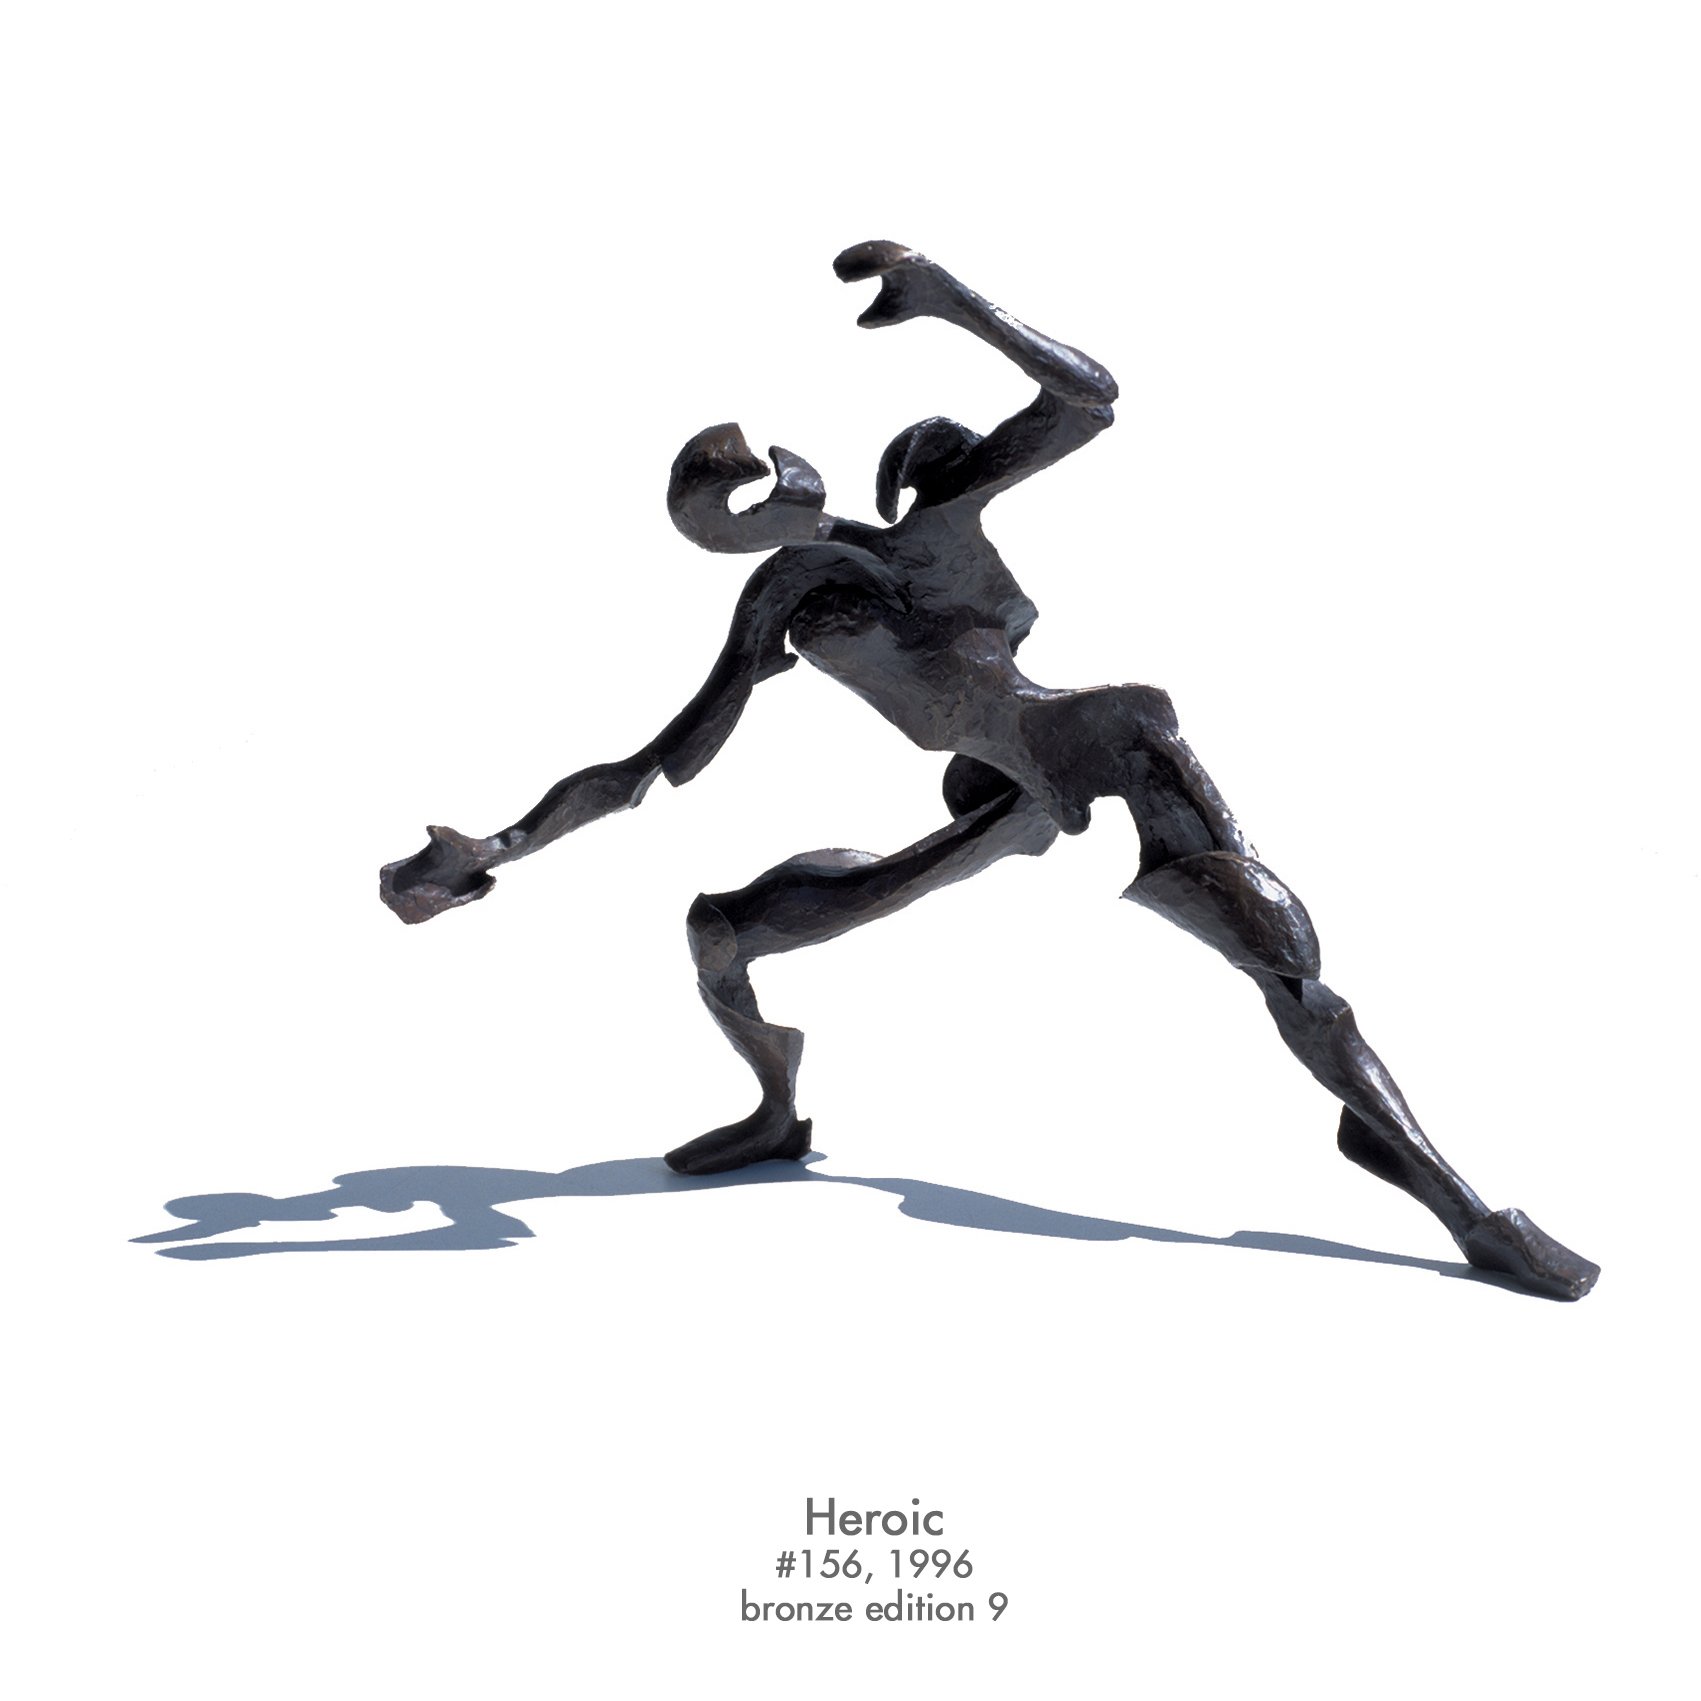 Heroic, 1996, bronze, #156